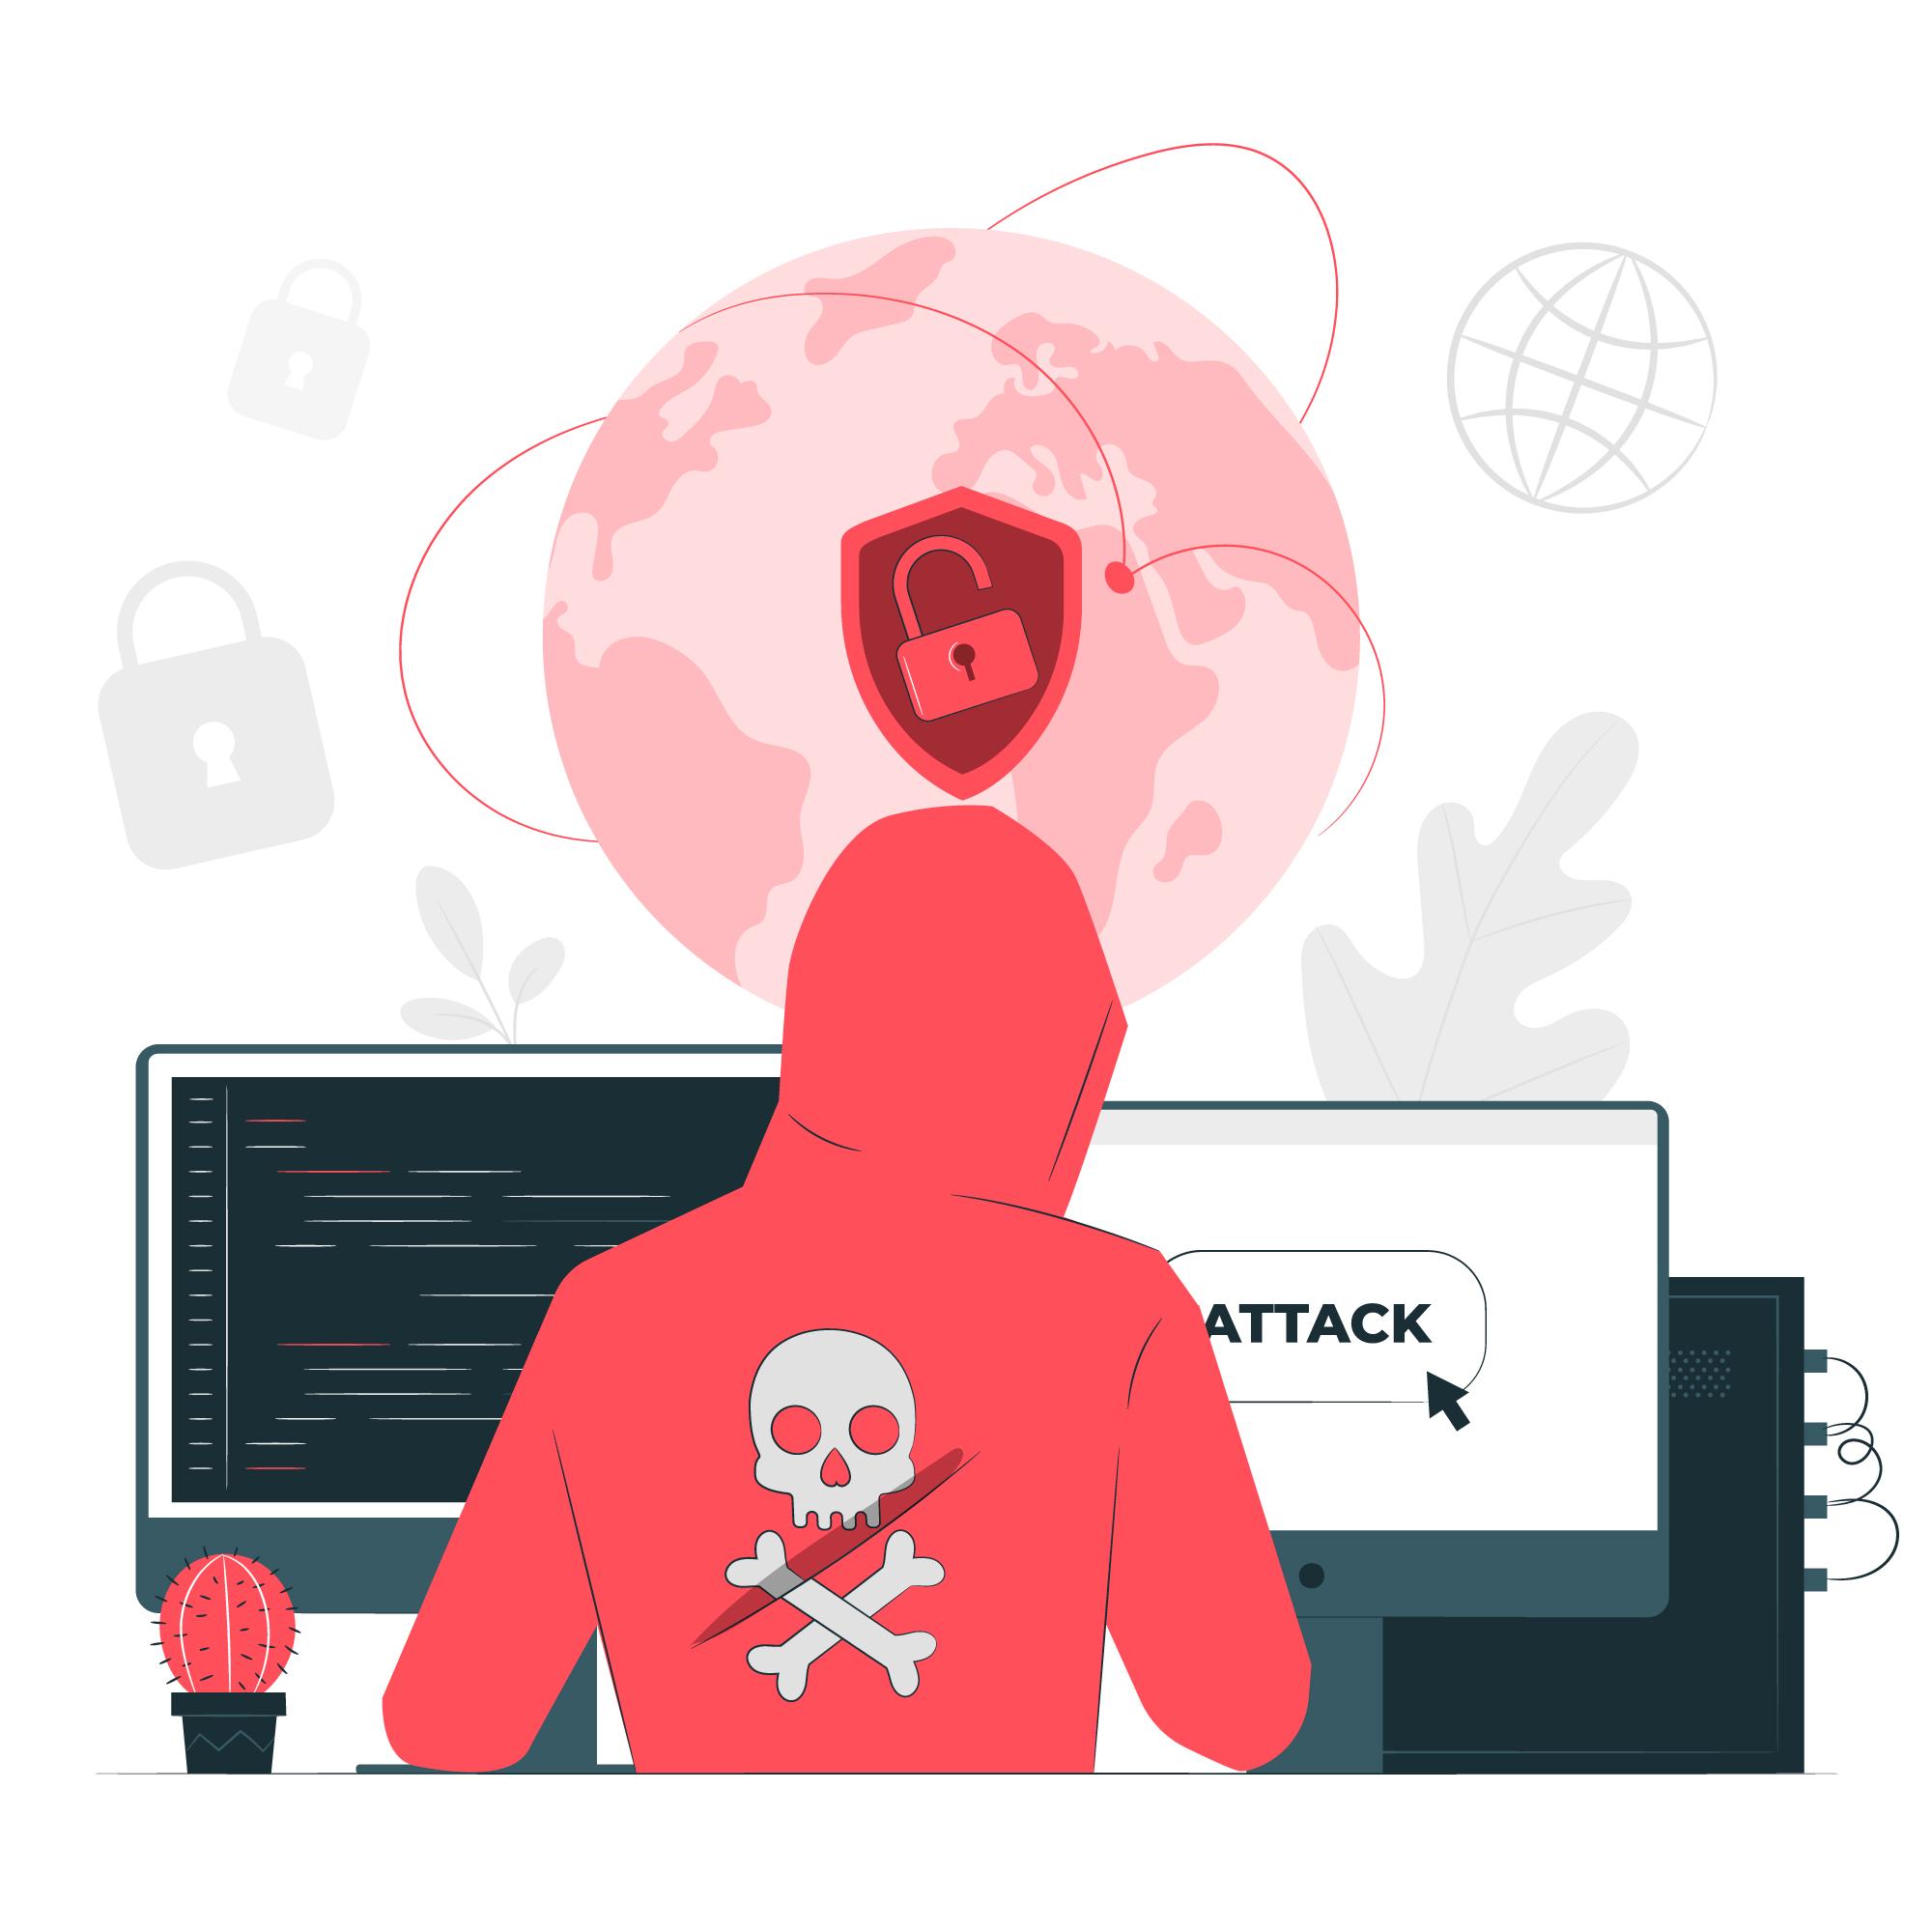 Vulnérabilités informatiques : quels enjeux pour notre vie privée ?